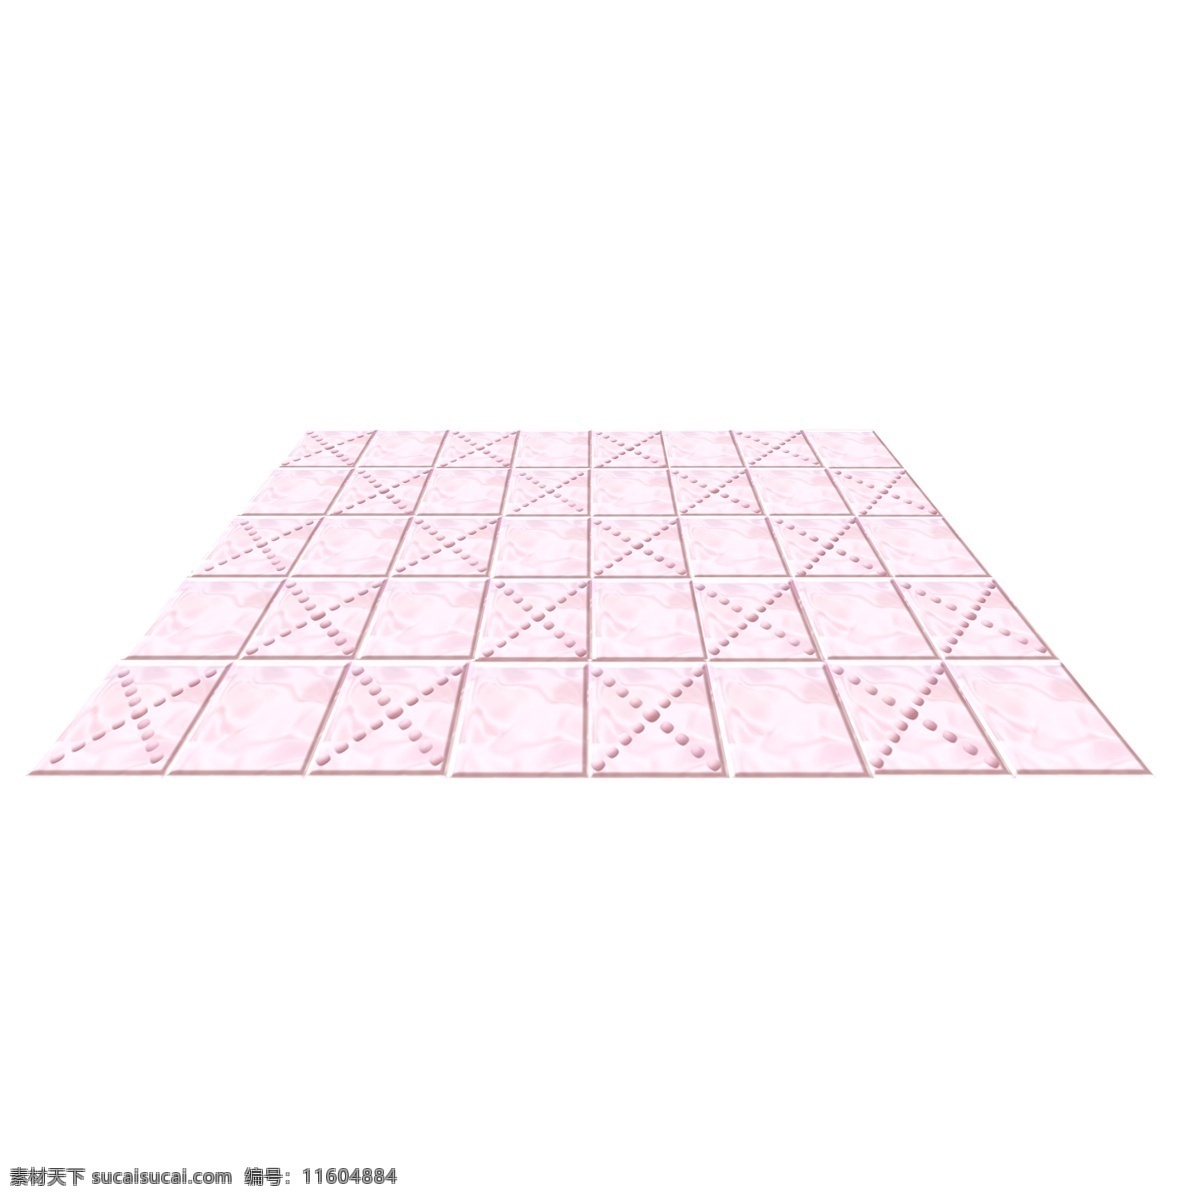 粉红色 粉色 凸起 拼 块 瓷砖 地板 凸起拼块 瓷砖地板 粉色凸起拼块